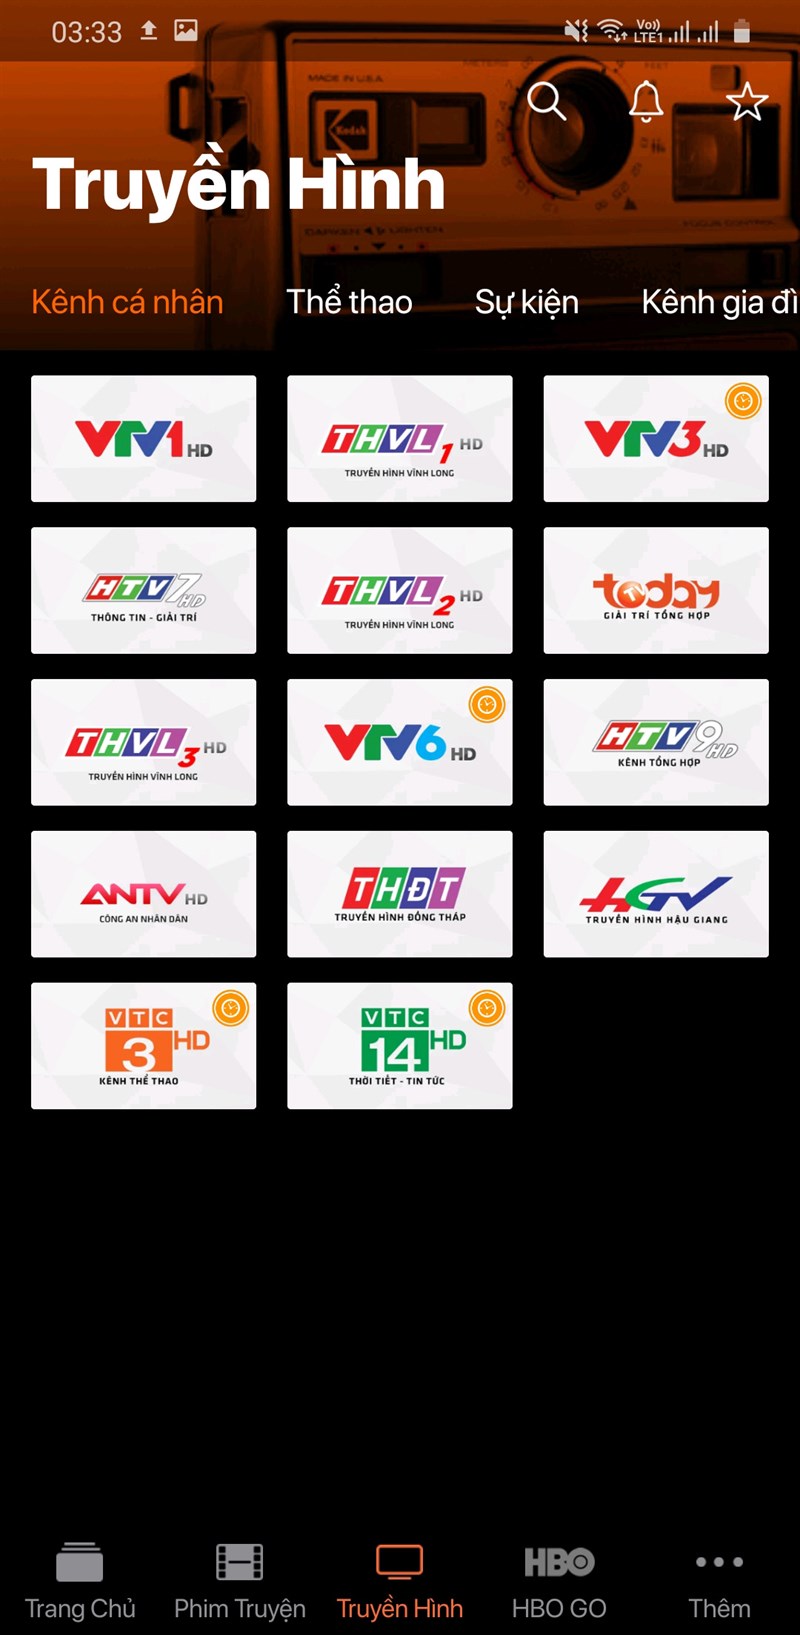 Bước 3: Tiếp đó, hệ thống sẽ hiển thị ra các kênh truyền hình là VTV1, VTV3, VTV6, THVL,... tại kênh cá nhân. Bạn muốn xem kênh nào, chỉ cần nhấn vào.